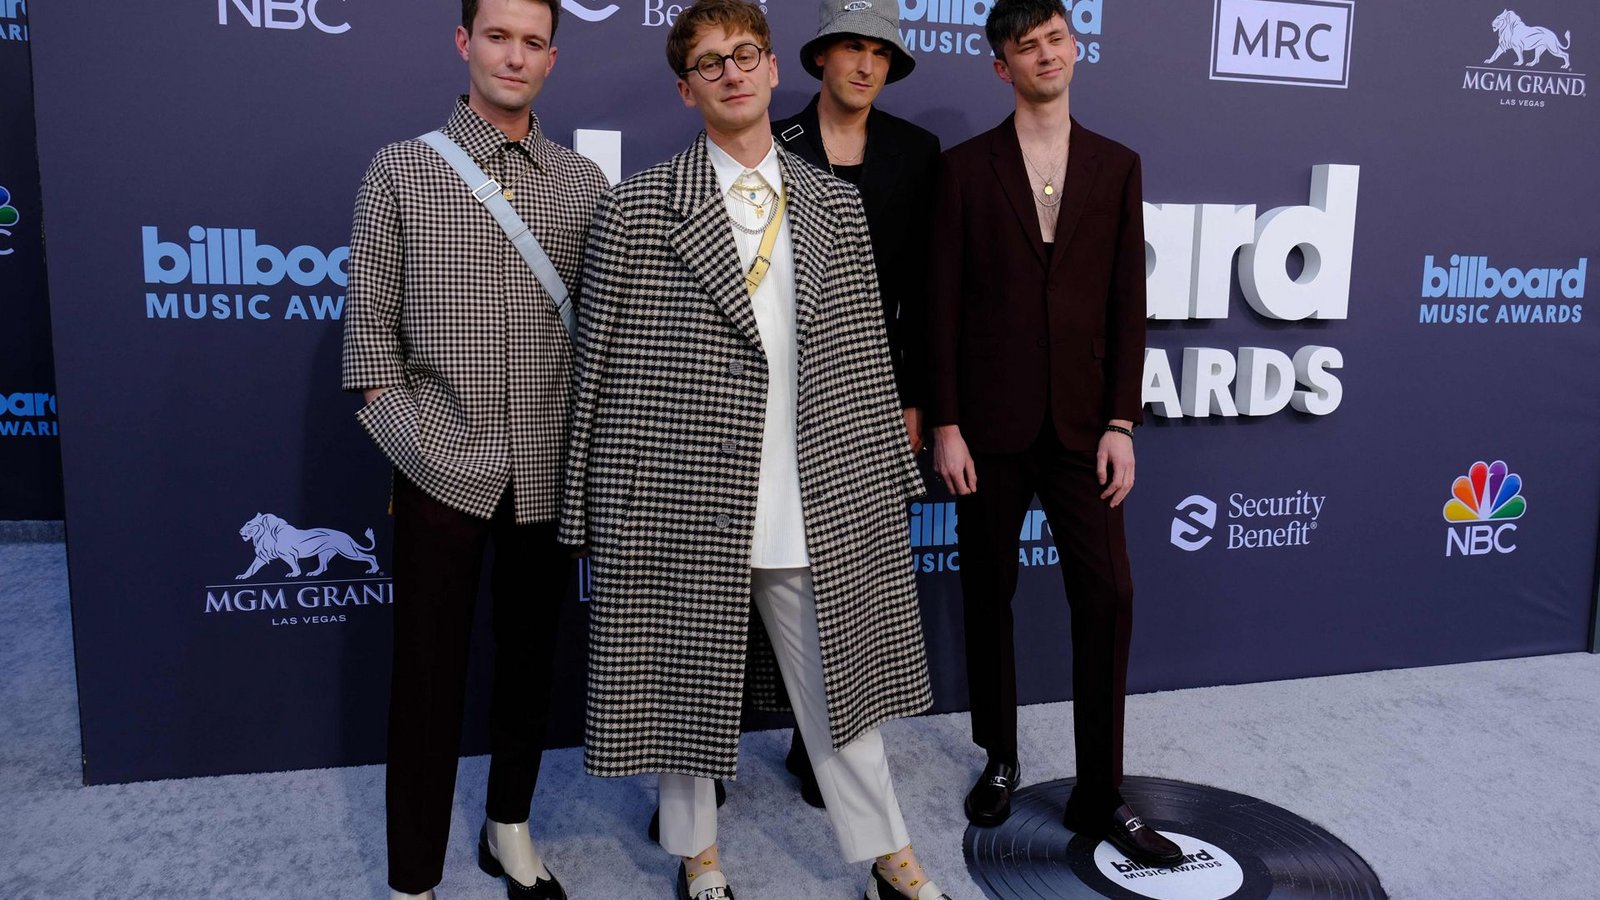 Die britische Rockband Glass Animals (Dave Bayley, Joe Seaward, Ed Irwin-Singer and Drew MacFarlane) bei den Billboard Music Awards 2022. Sie gewannen den Award für Top Rock Artist.Foto: AFP/MARIA ALEJANDRA CARDONA